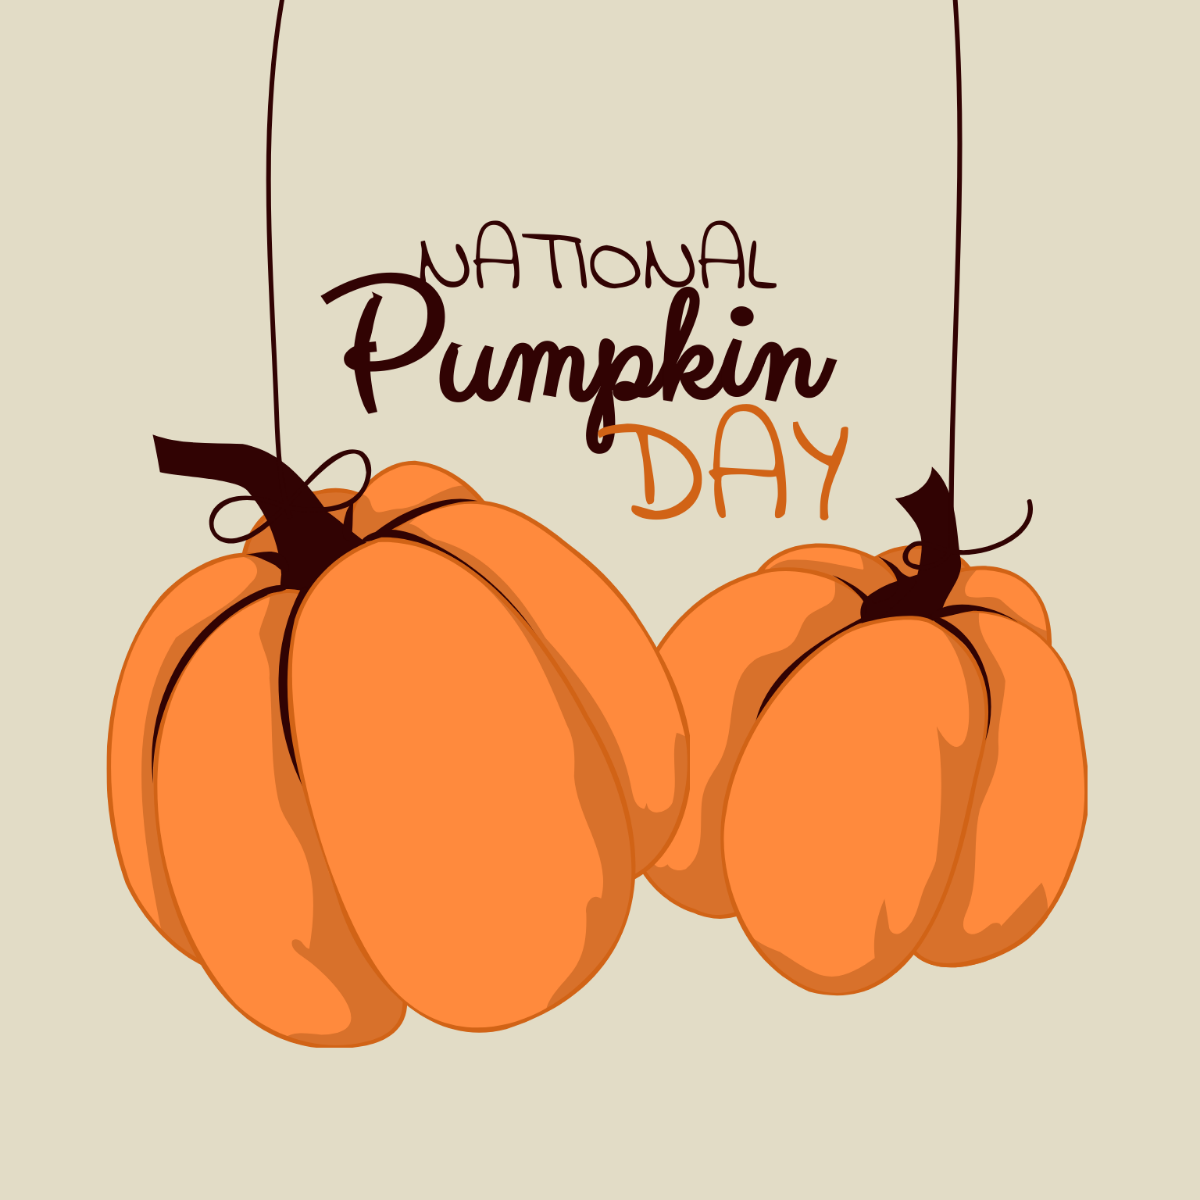 National Pumpkin Day Vector Template